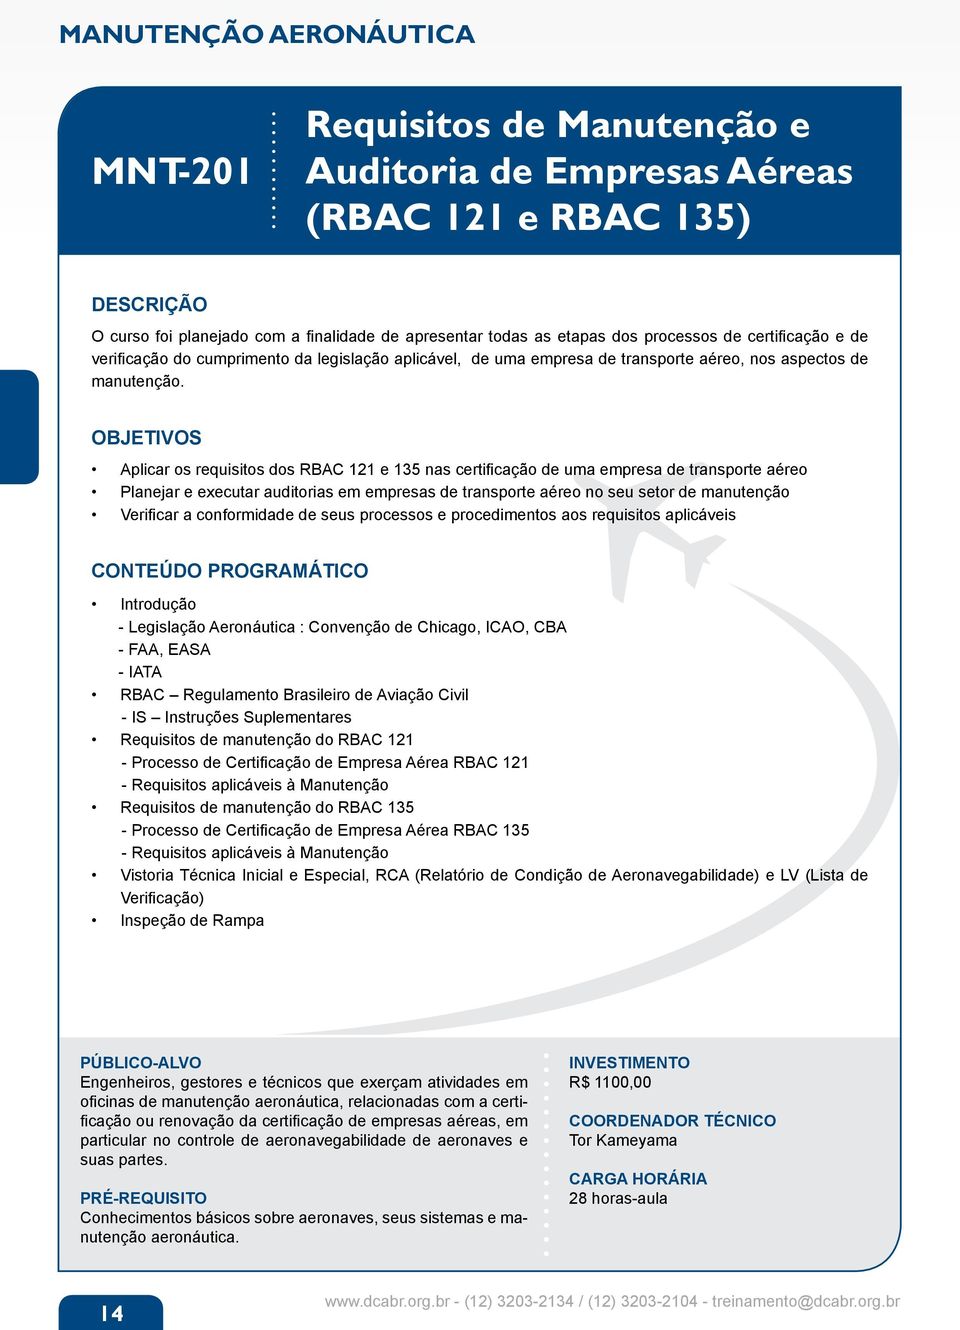 Aplicar os requisitos dos RBAC 121 e 135 nas certificação de uma empresa de transporte aéreo Planejar e executar auditorias em empresas de transporte aéreo no seu setor de manutenção Verificar a